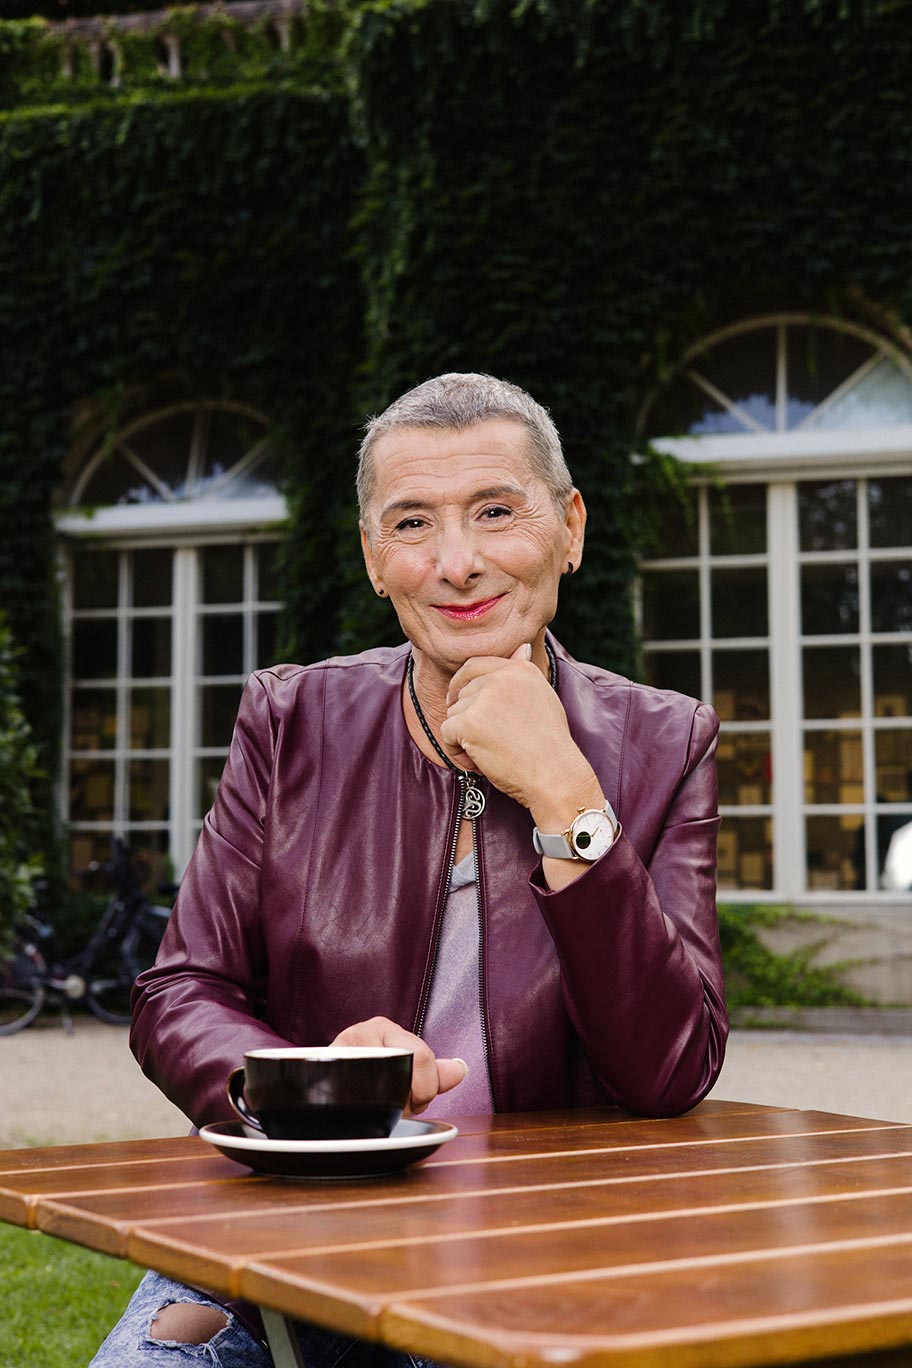 Eine Person mit ganz kurzen grauen Haaren und violetter Lederjacke sitzt mit einem Kaffee am Gartentisch und lächelt in die Kamera.